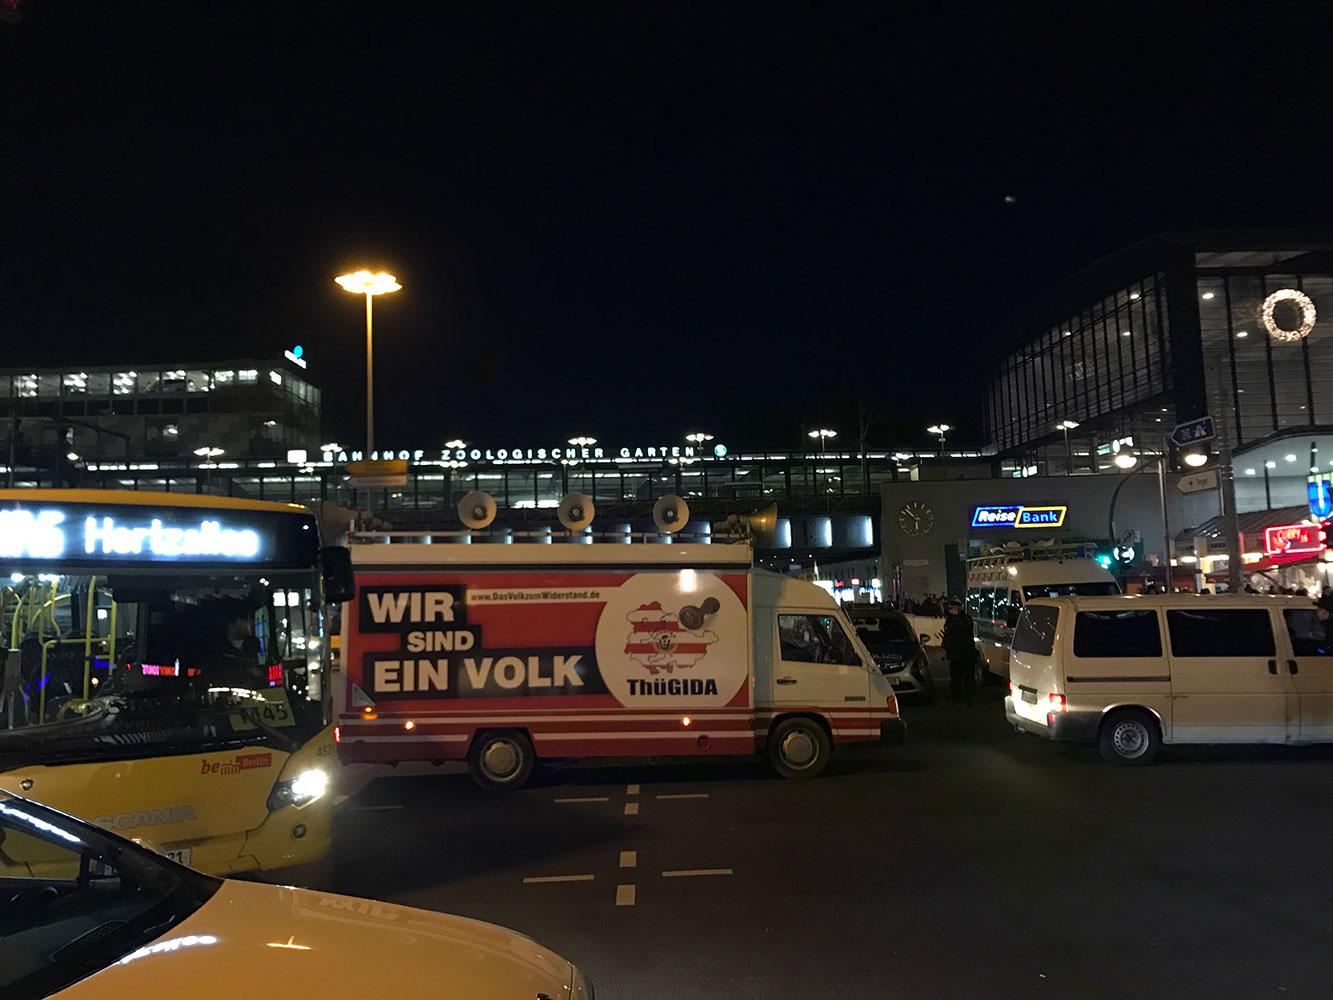 Thügida, systerorganisation, hade en buss med högtalare på taket under sin manifestation.